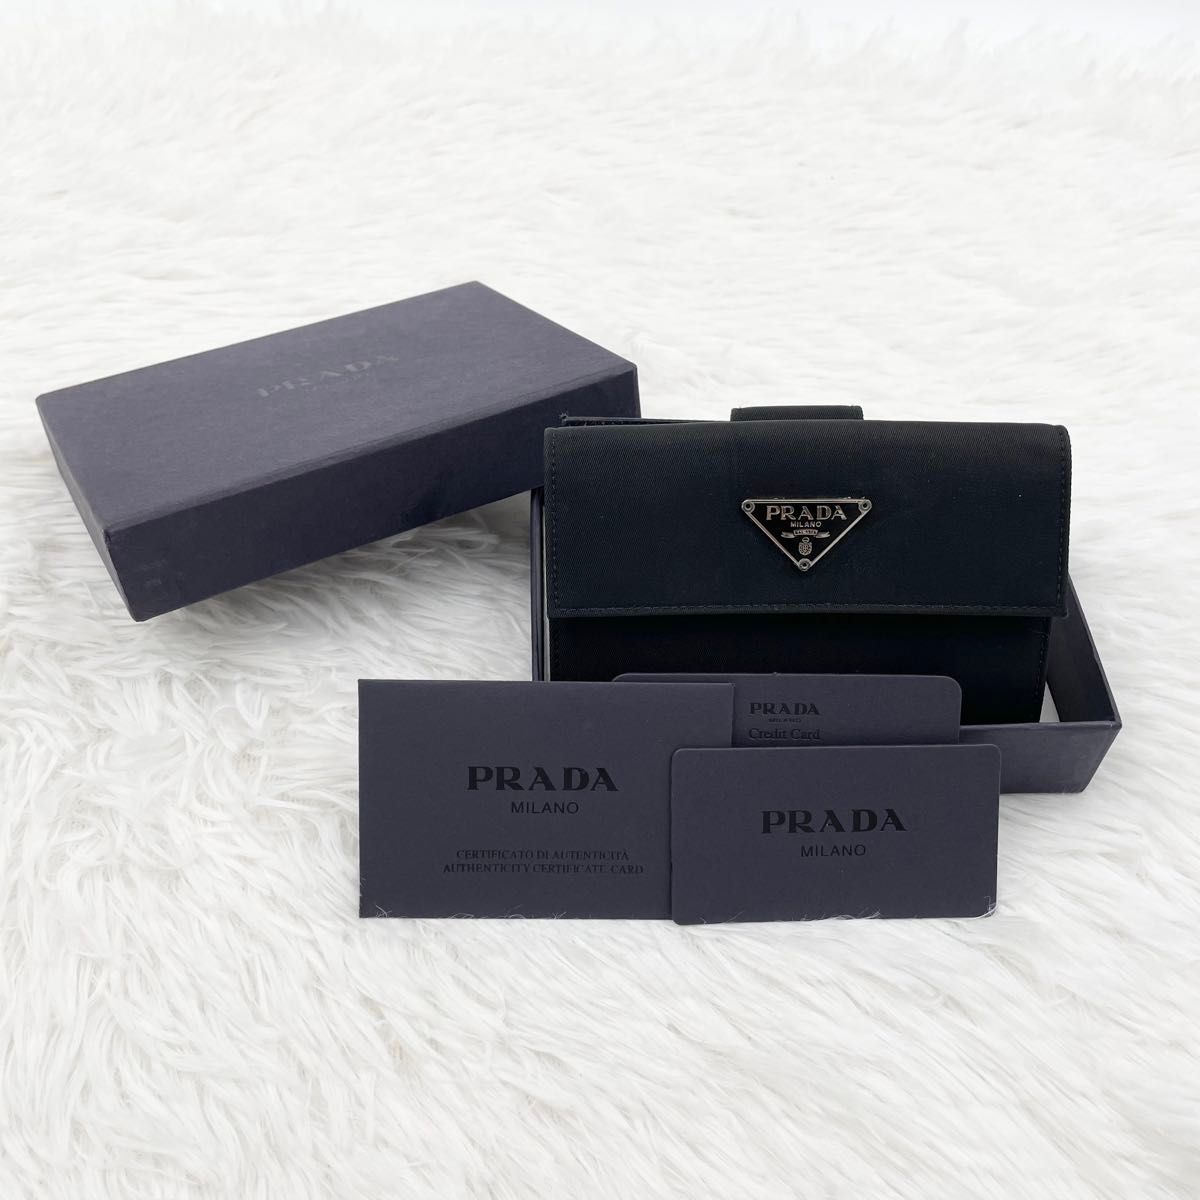 【美品】PRADA プラダ 三つ折財布 ナイロン 三角ロゴ トライアングル 黒 ブラック